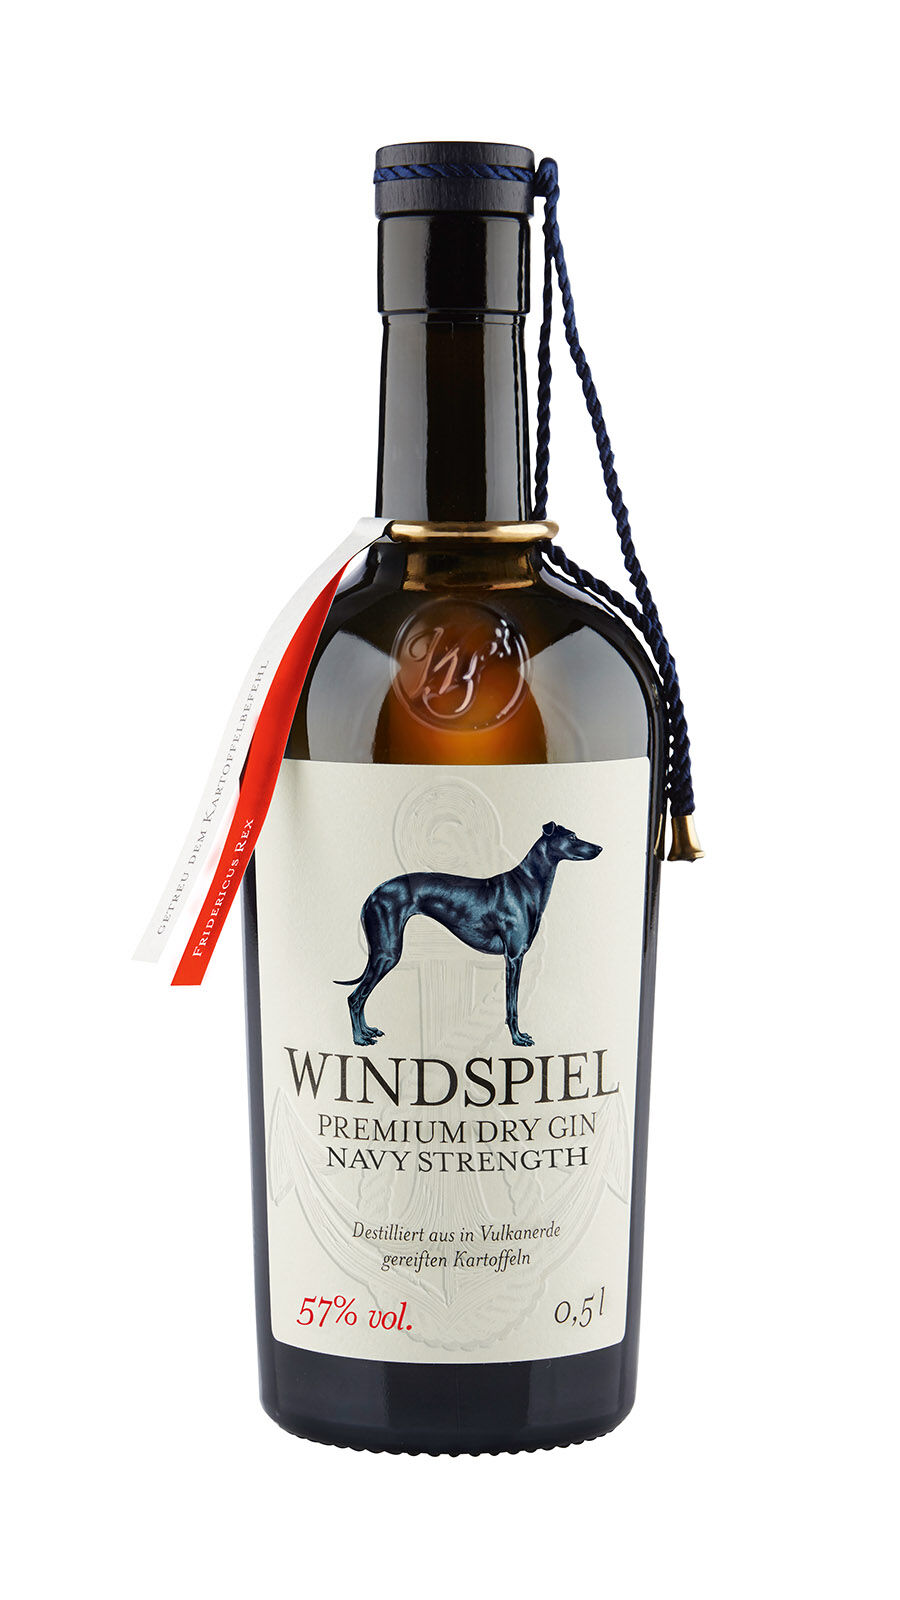 windspiel-premium-dry-gin